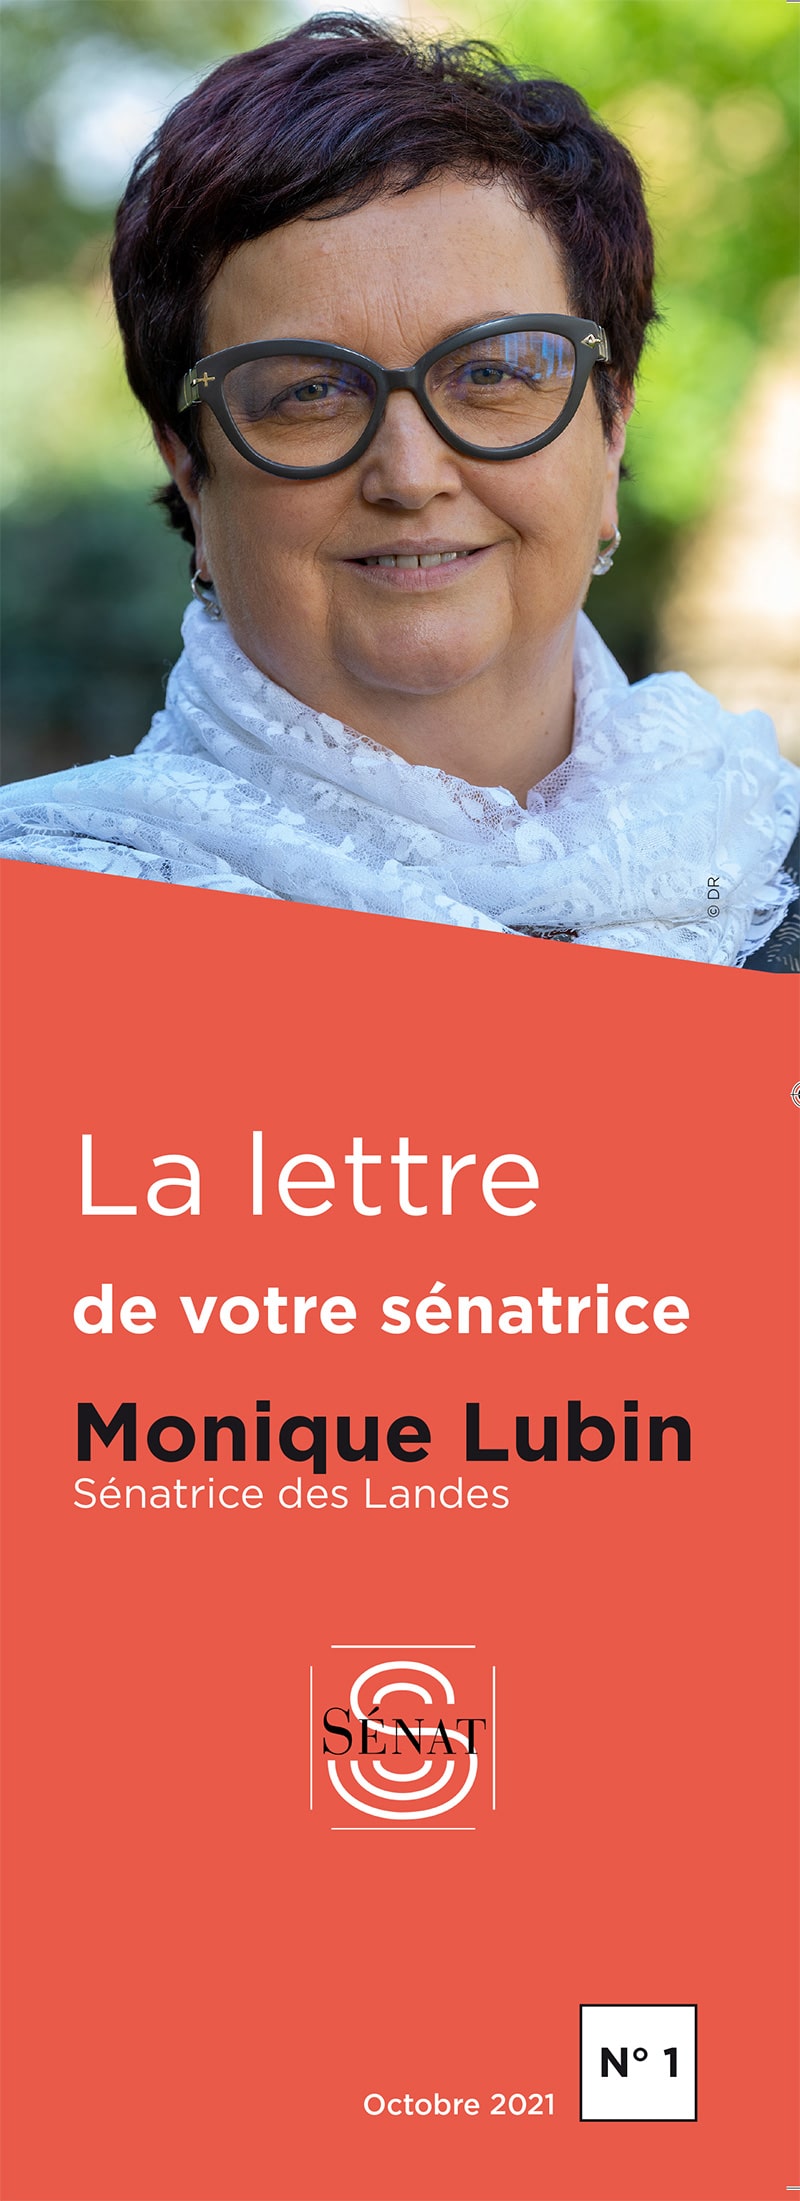 Mise en page de la lettre de la sénatrice Monique Lubin